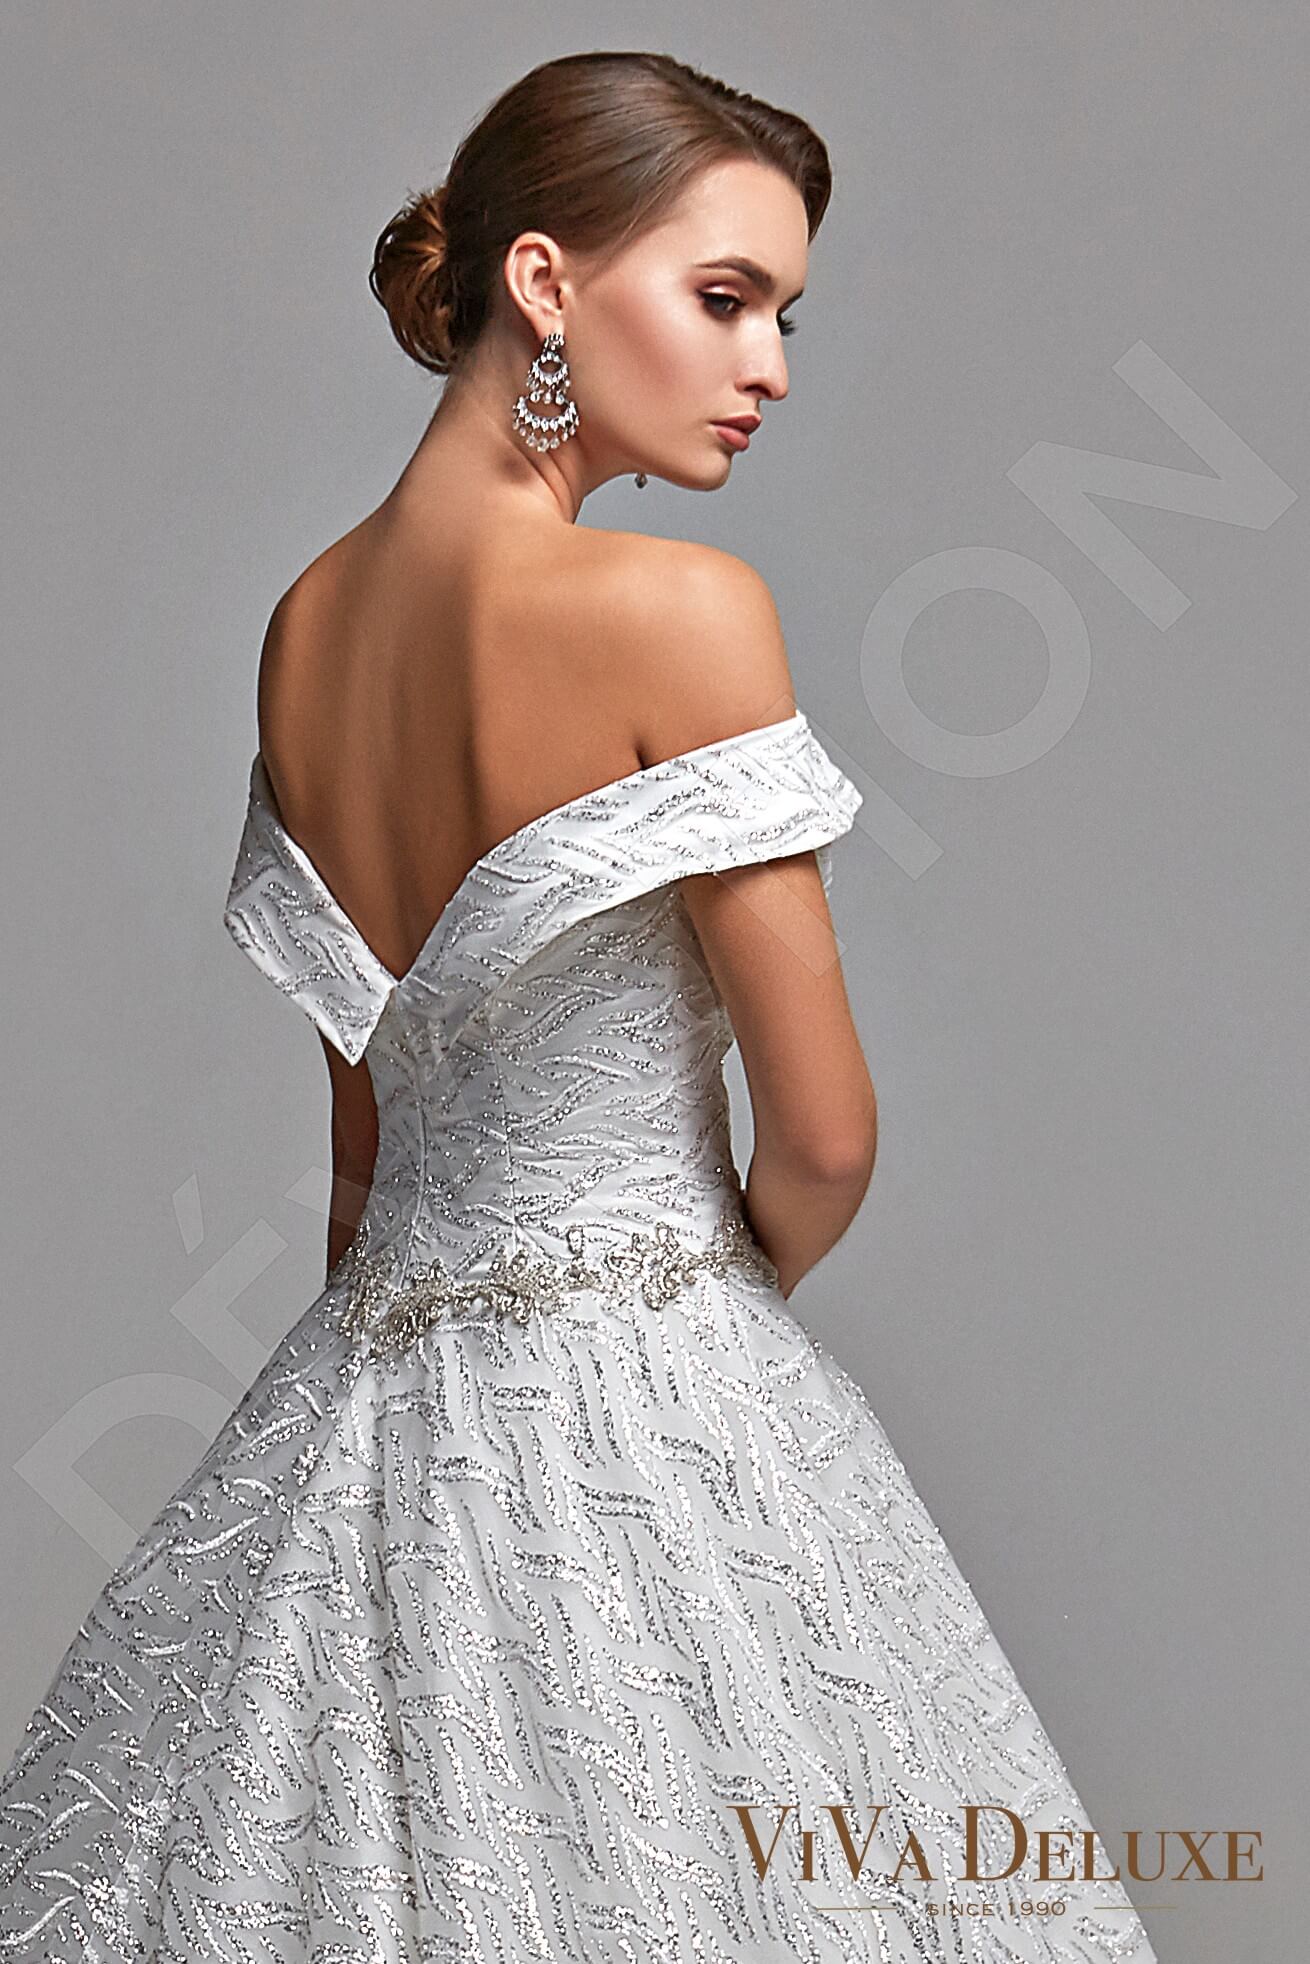 Perla Open back Princess/Ball Gown Sleeveless Wedding Dress 3